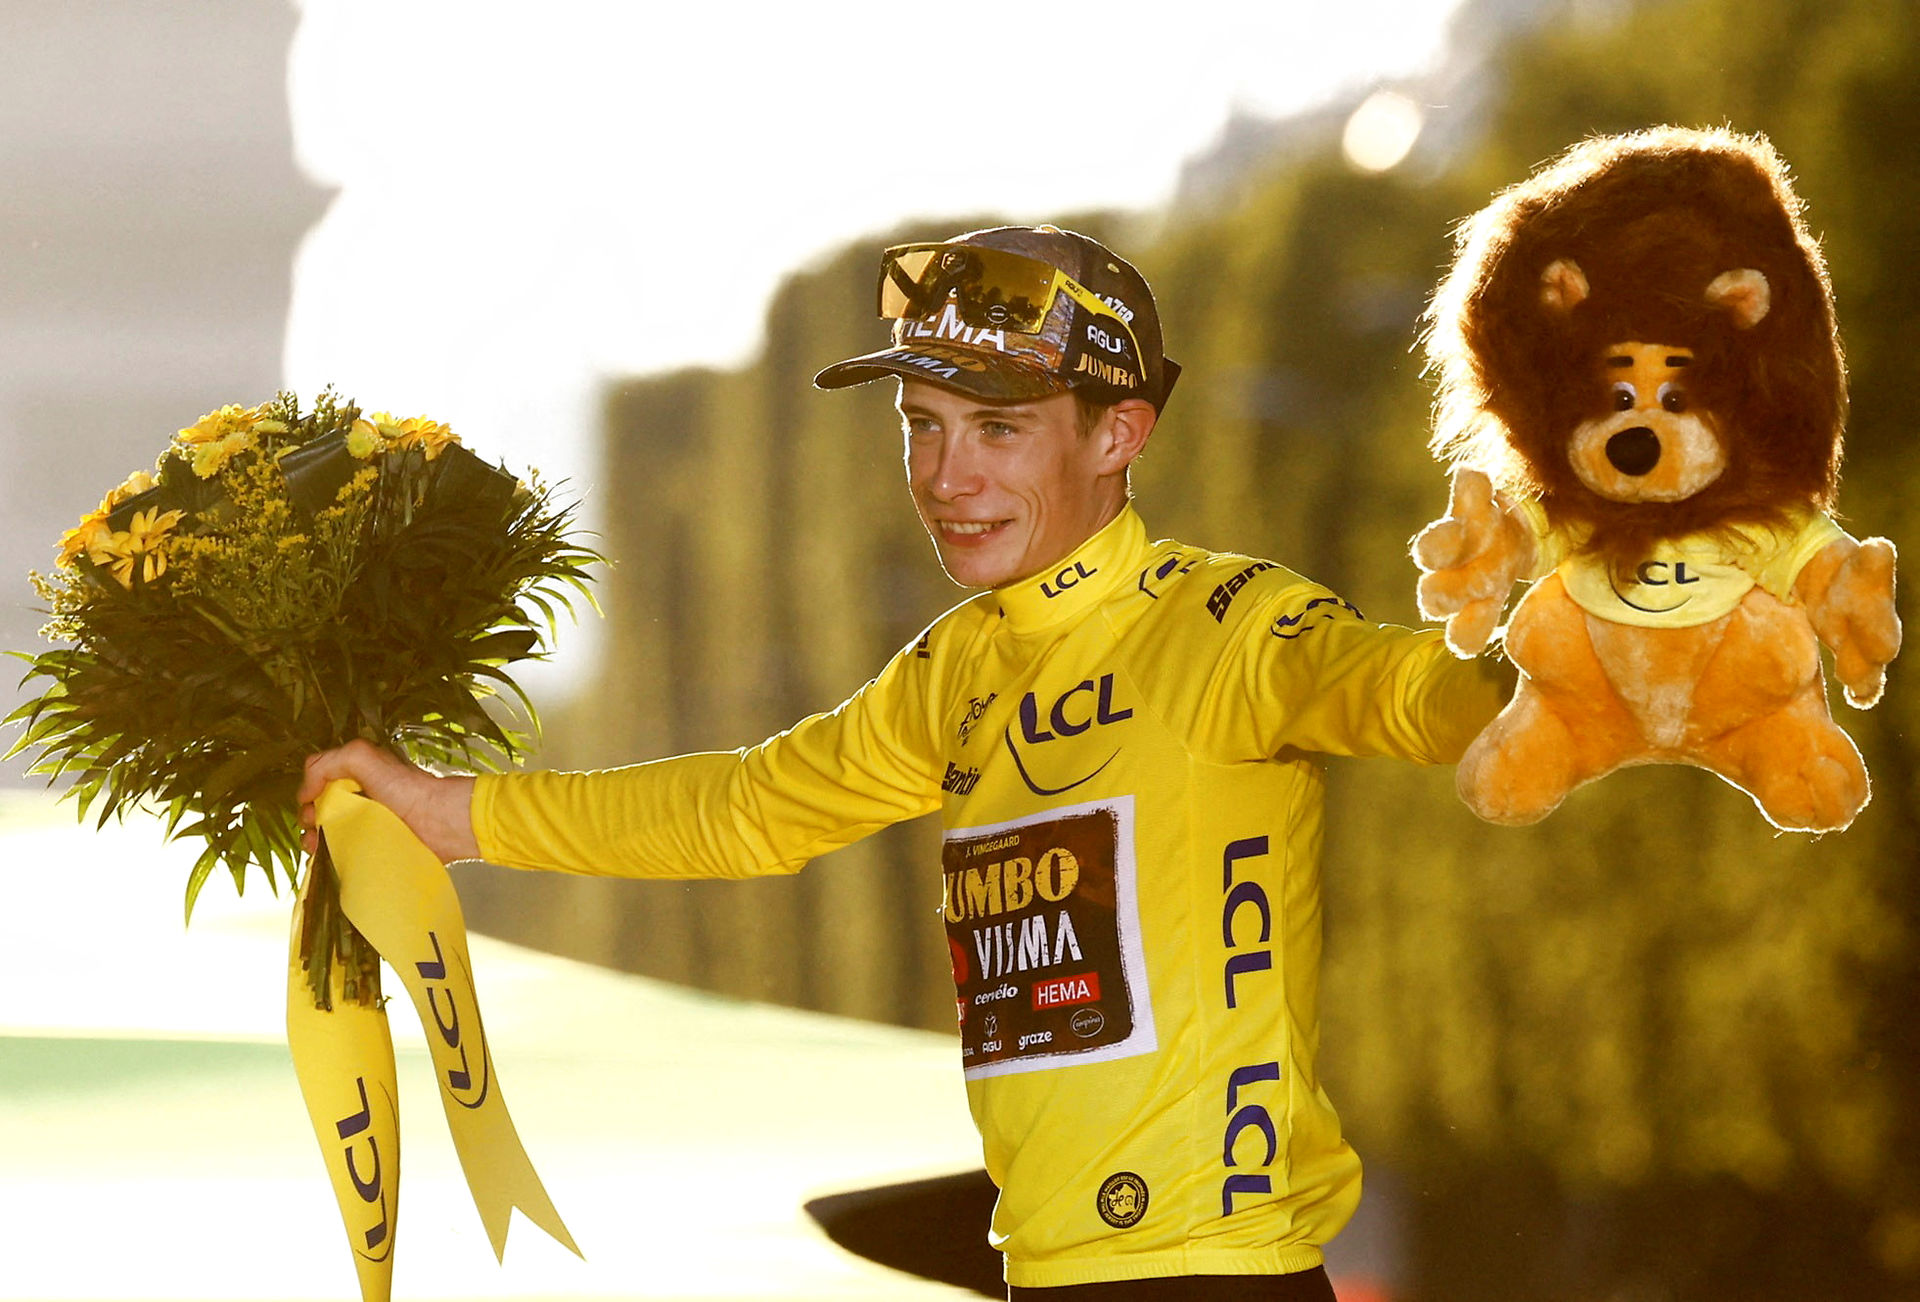 Tour de France finale - kom med på sportsredaktionen